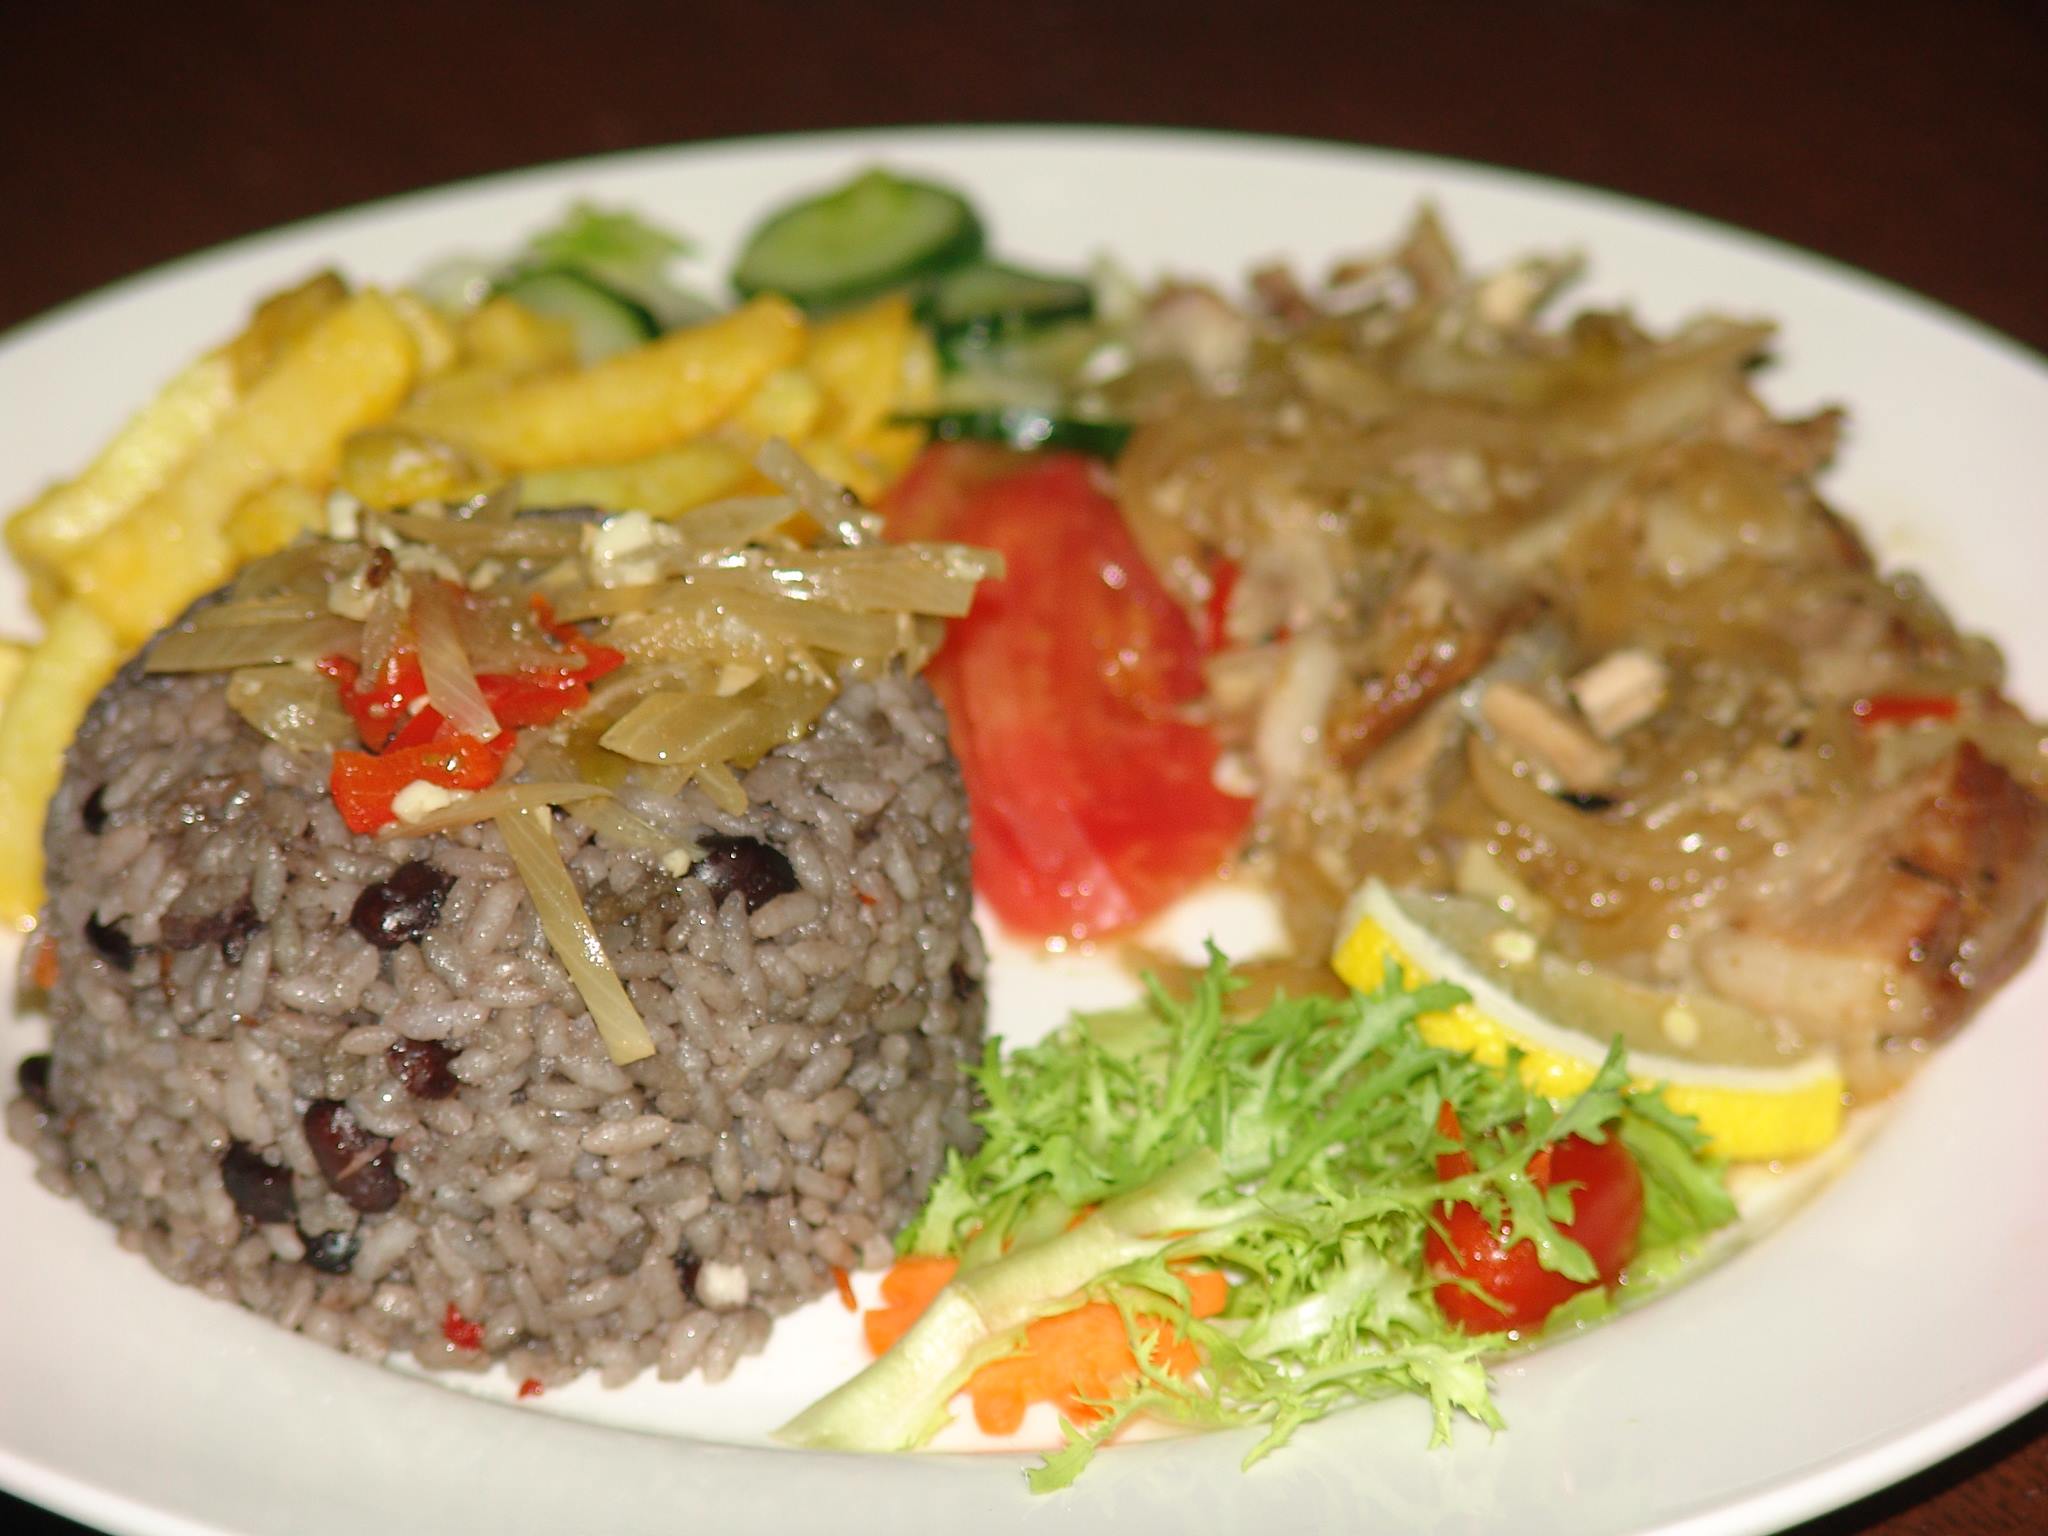 Uno de los platos bandera de A-ché (y de todo restaurante cubano que se haya instalado en Pekín) ha sido la "completa" de bisté de cerdo, arroz congrí, vianda y ensalada.